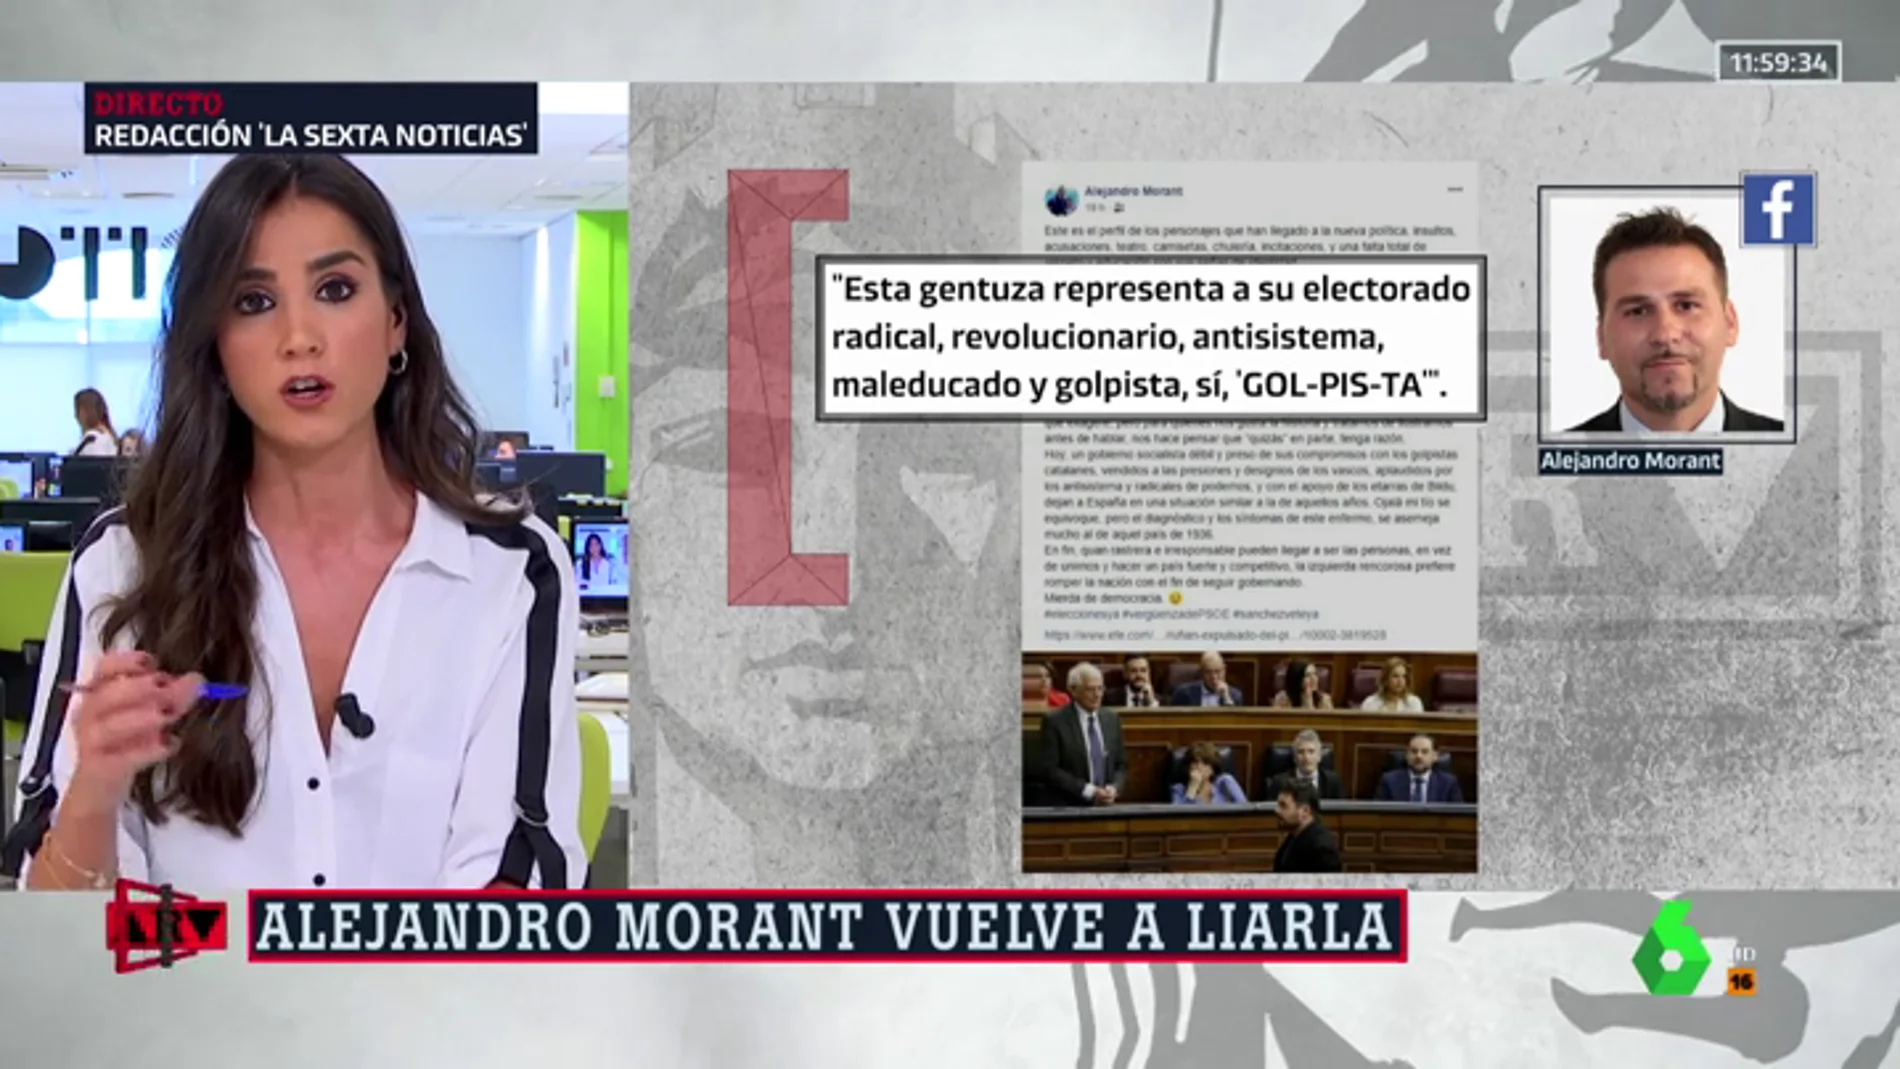 "Mierda de democracia", la crítica Alejandro Morant a Rufián y ERC: "Esta gentuza representa a su electorado radical y golpista"